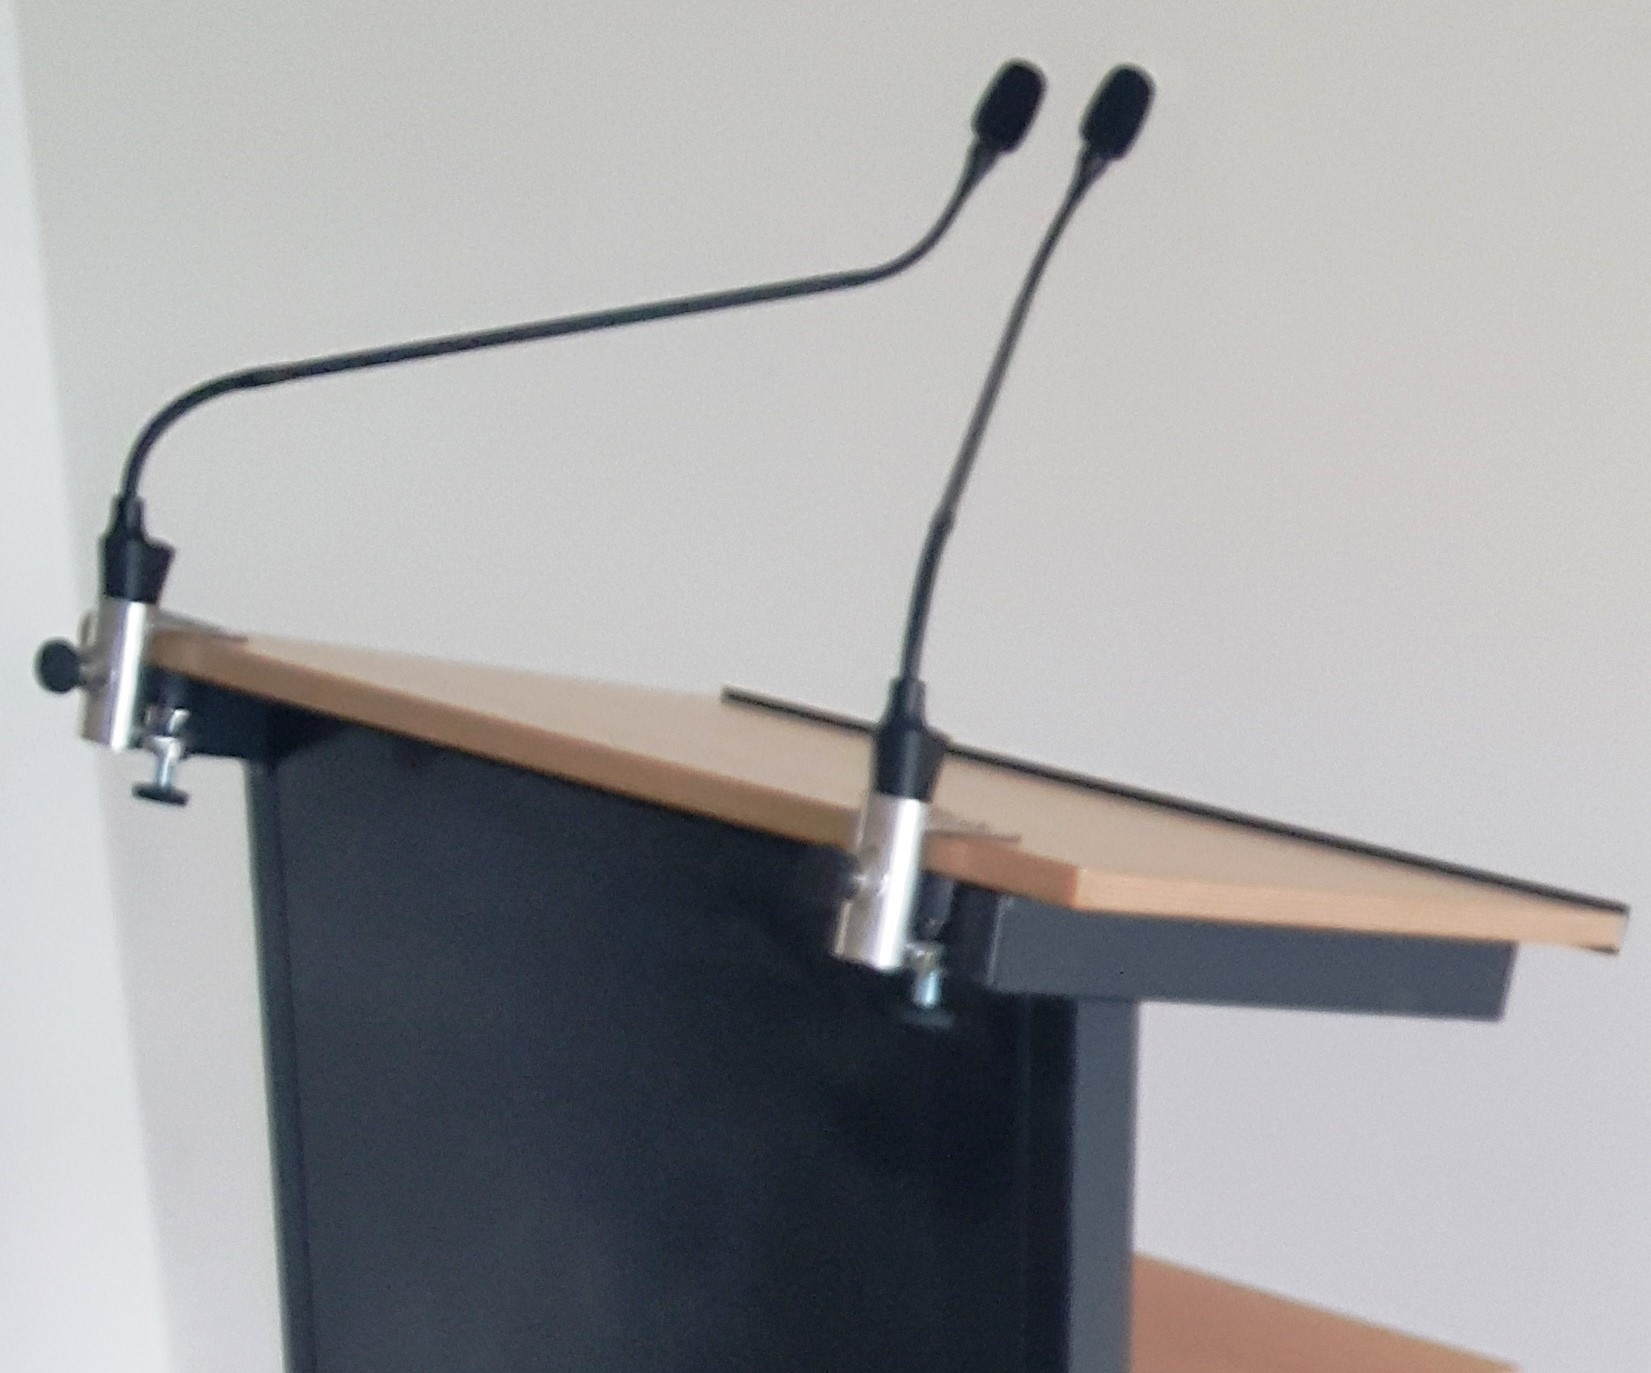 Držáky konferenčních mikrofonů na řečnický pult s mikrofony Shure